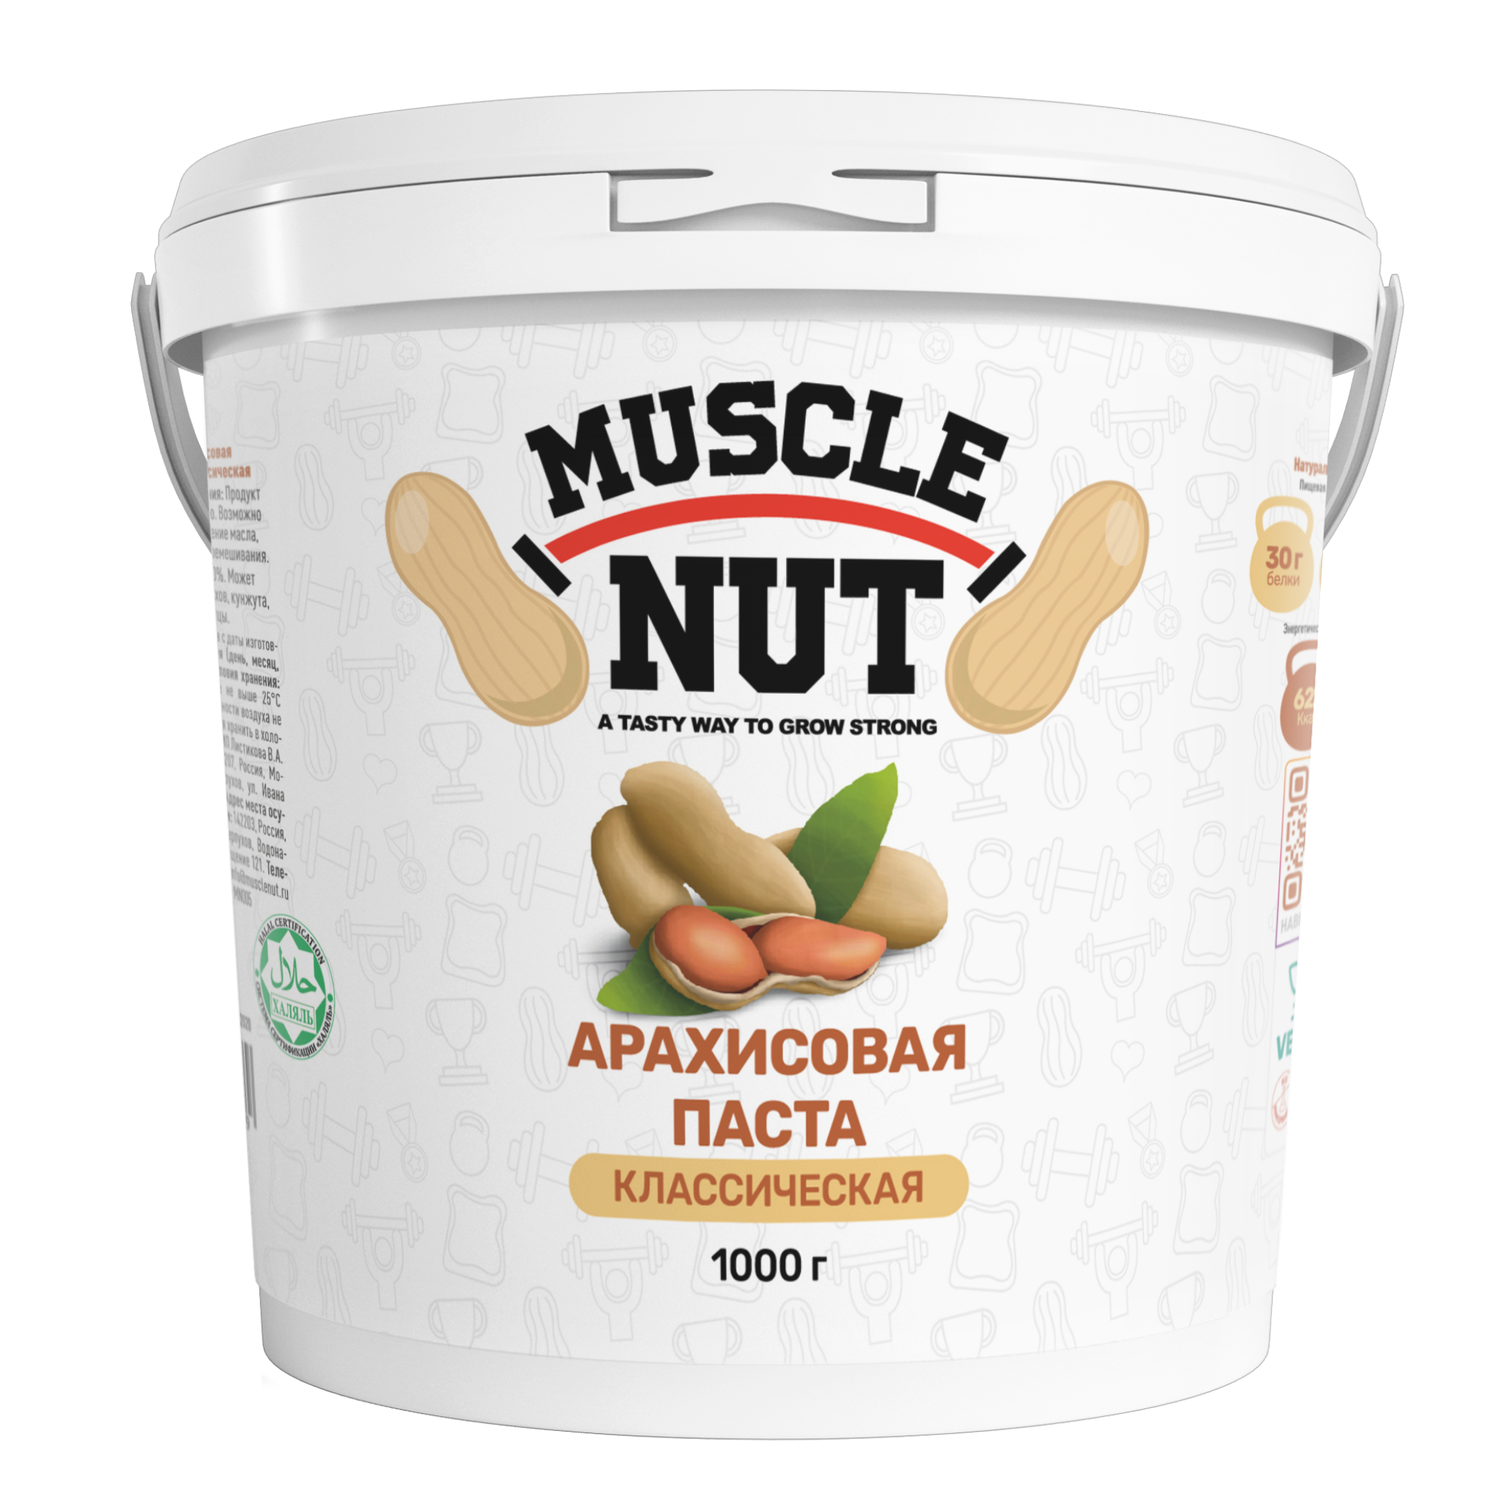 Арахисовая паста Muscle Nut классическая без сахара натуральная высокобелковая 1000 г - фото 1